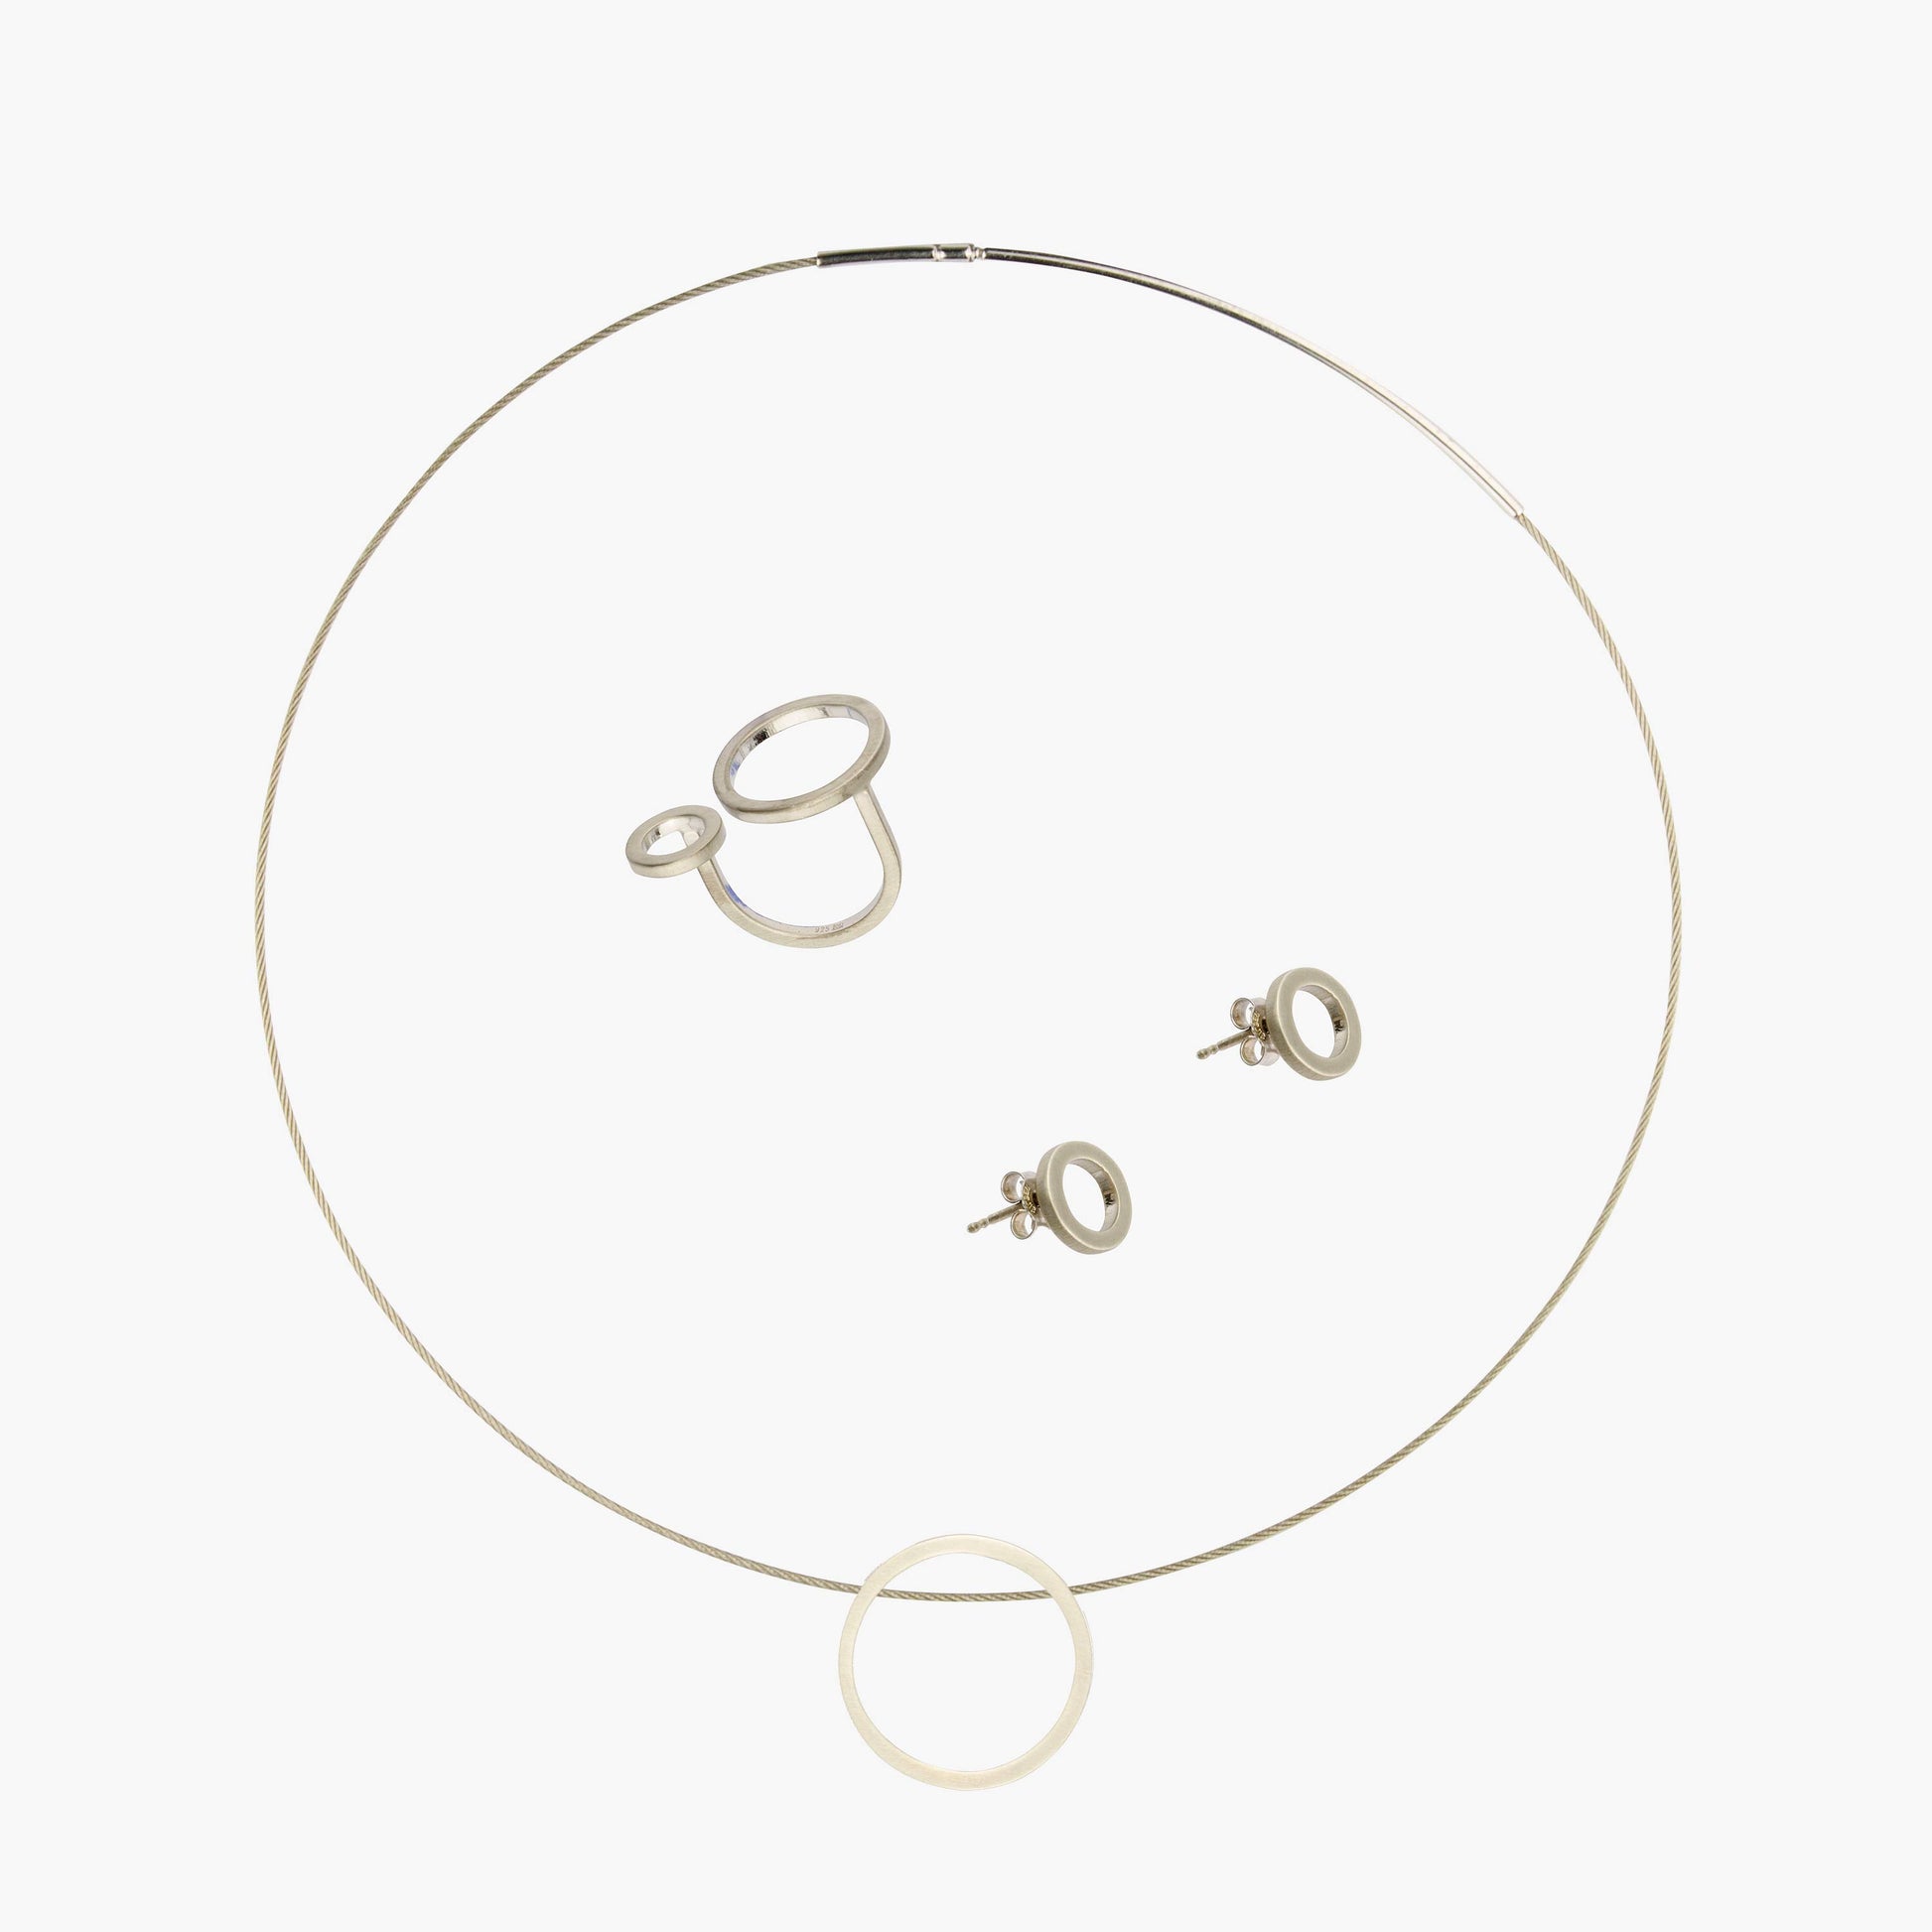 Das MAXI Set CIRCULAR beinhaltet einen Ring, zwei Ohrstecker sowie eine Kette und Anhänger. Diese bestehen aus 925er Sterlingsilber und einer dünnen Schicht Rhodium